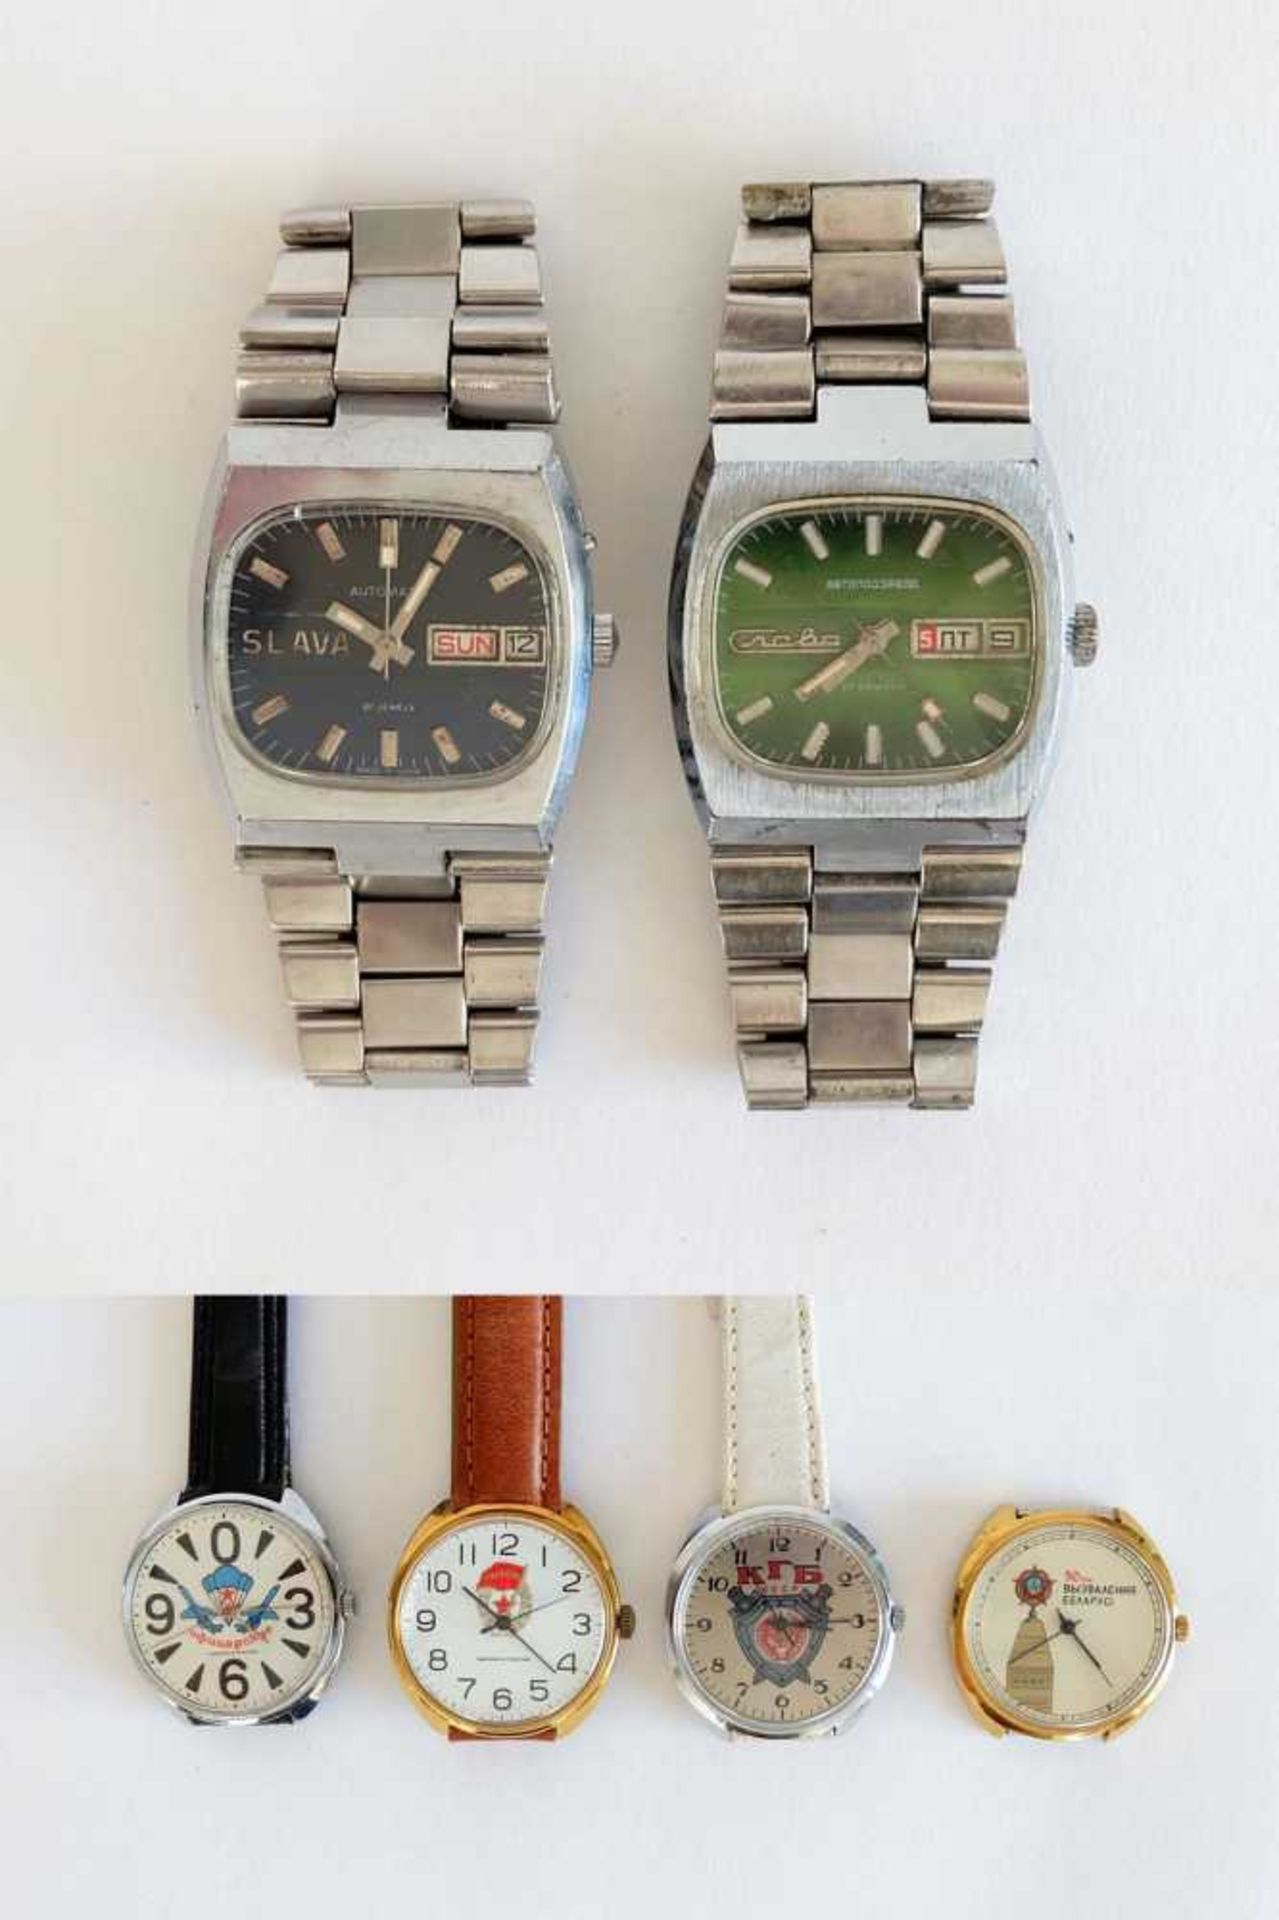 HAU, Konvolut von 6, UdSSR, Hersteller Zweite Moskauer Uhrenfabrik Slawa, 1970er-Jahre, Automatic,